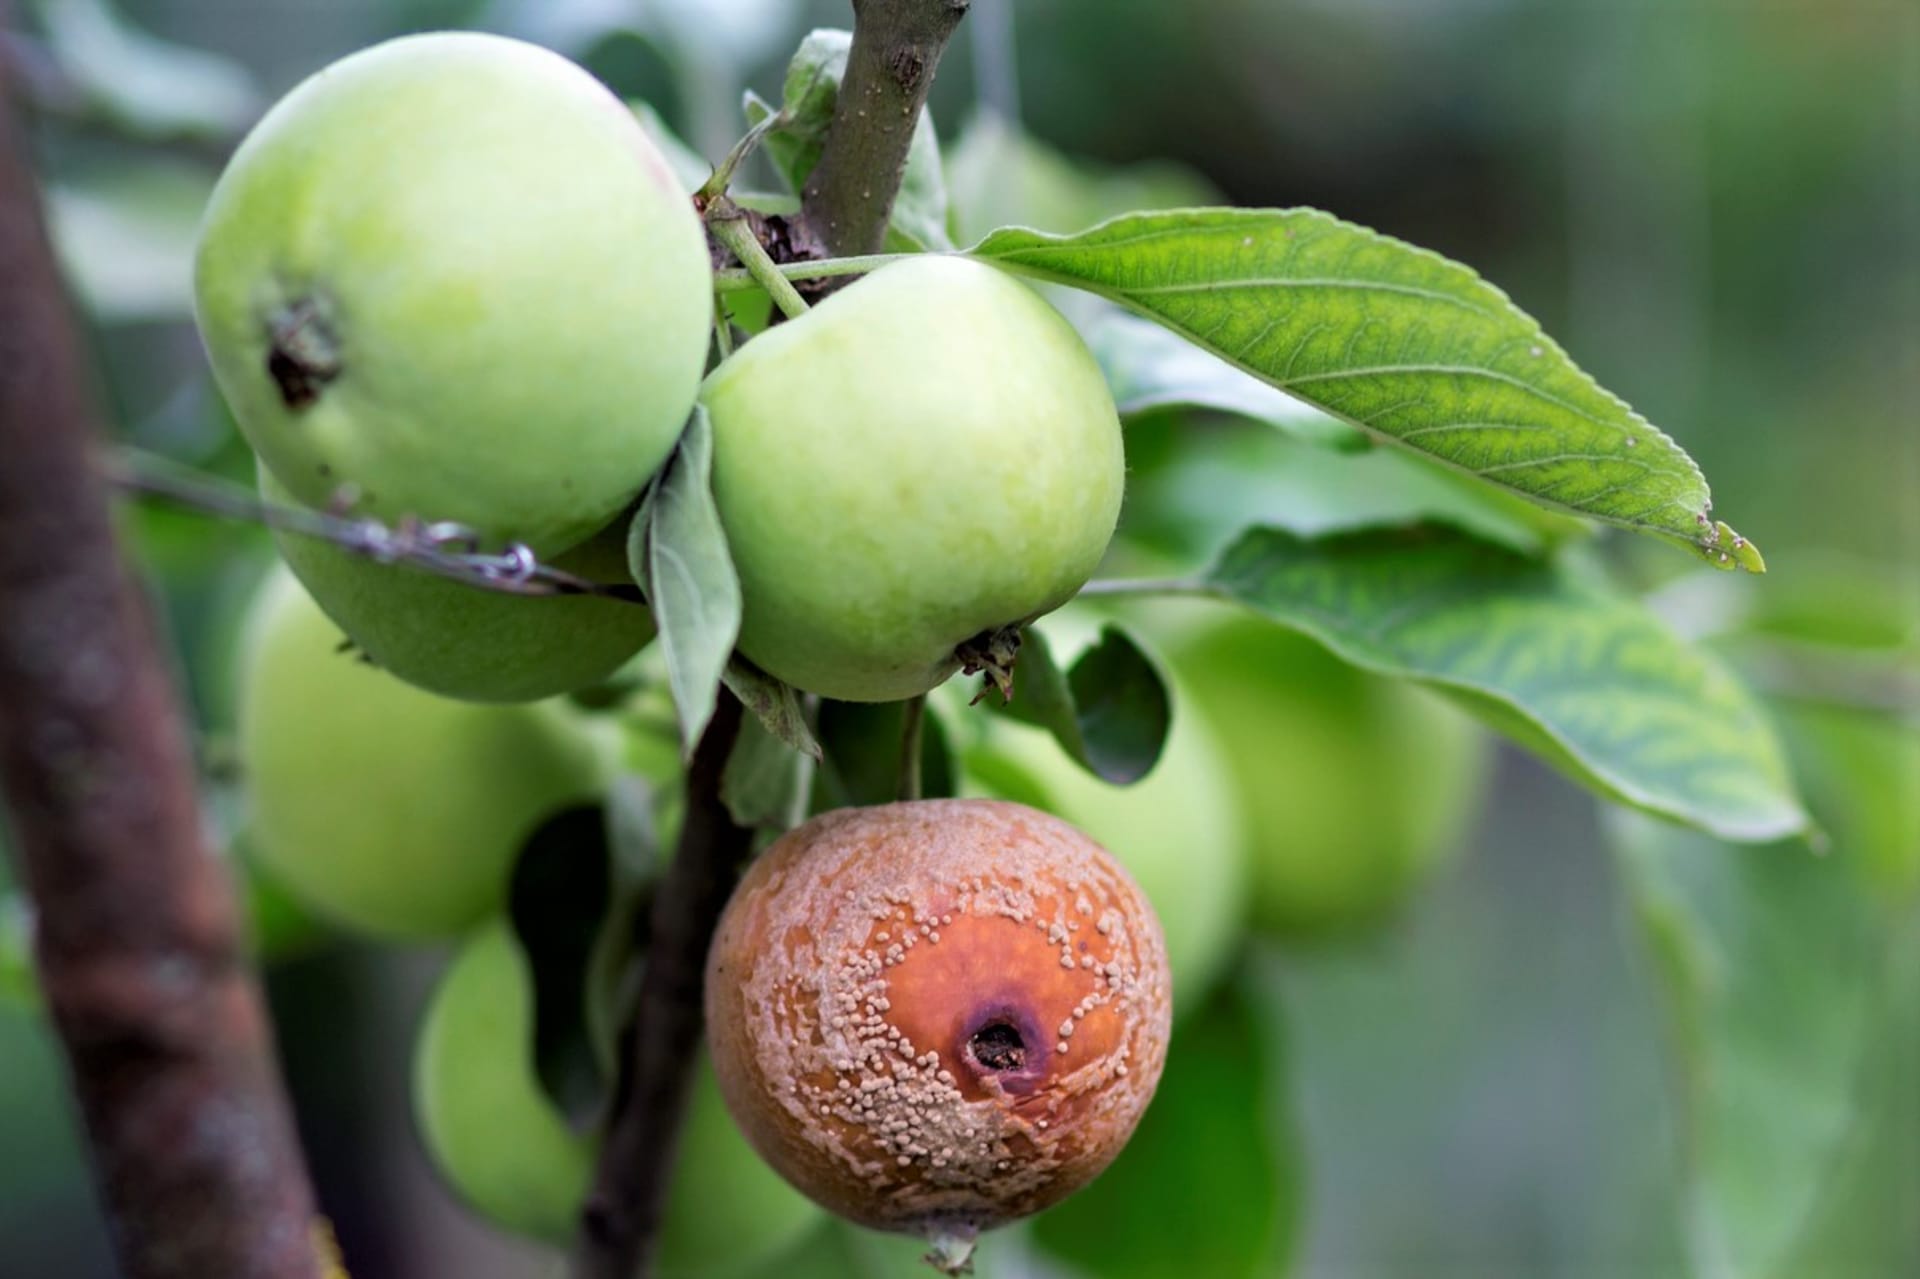 Jednou z nejčastějších chorob jablek je moniliová hniloba, kterou známe jak z dozrávajících plodů, tak z uskladněných